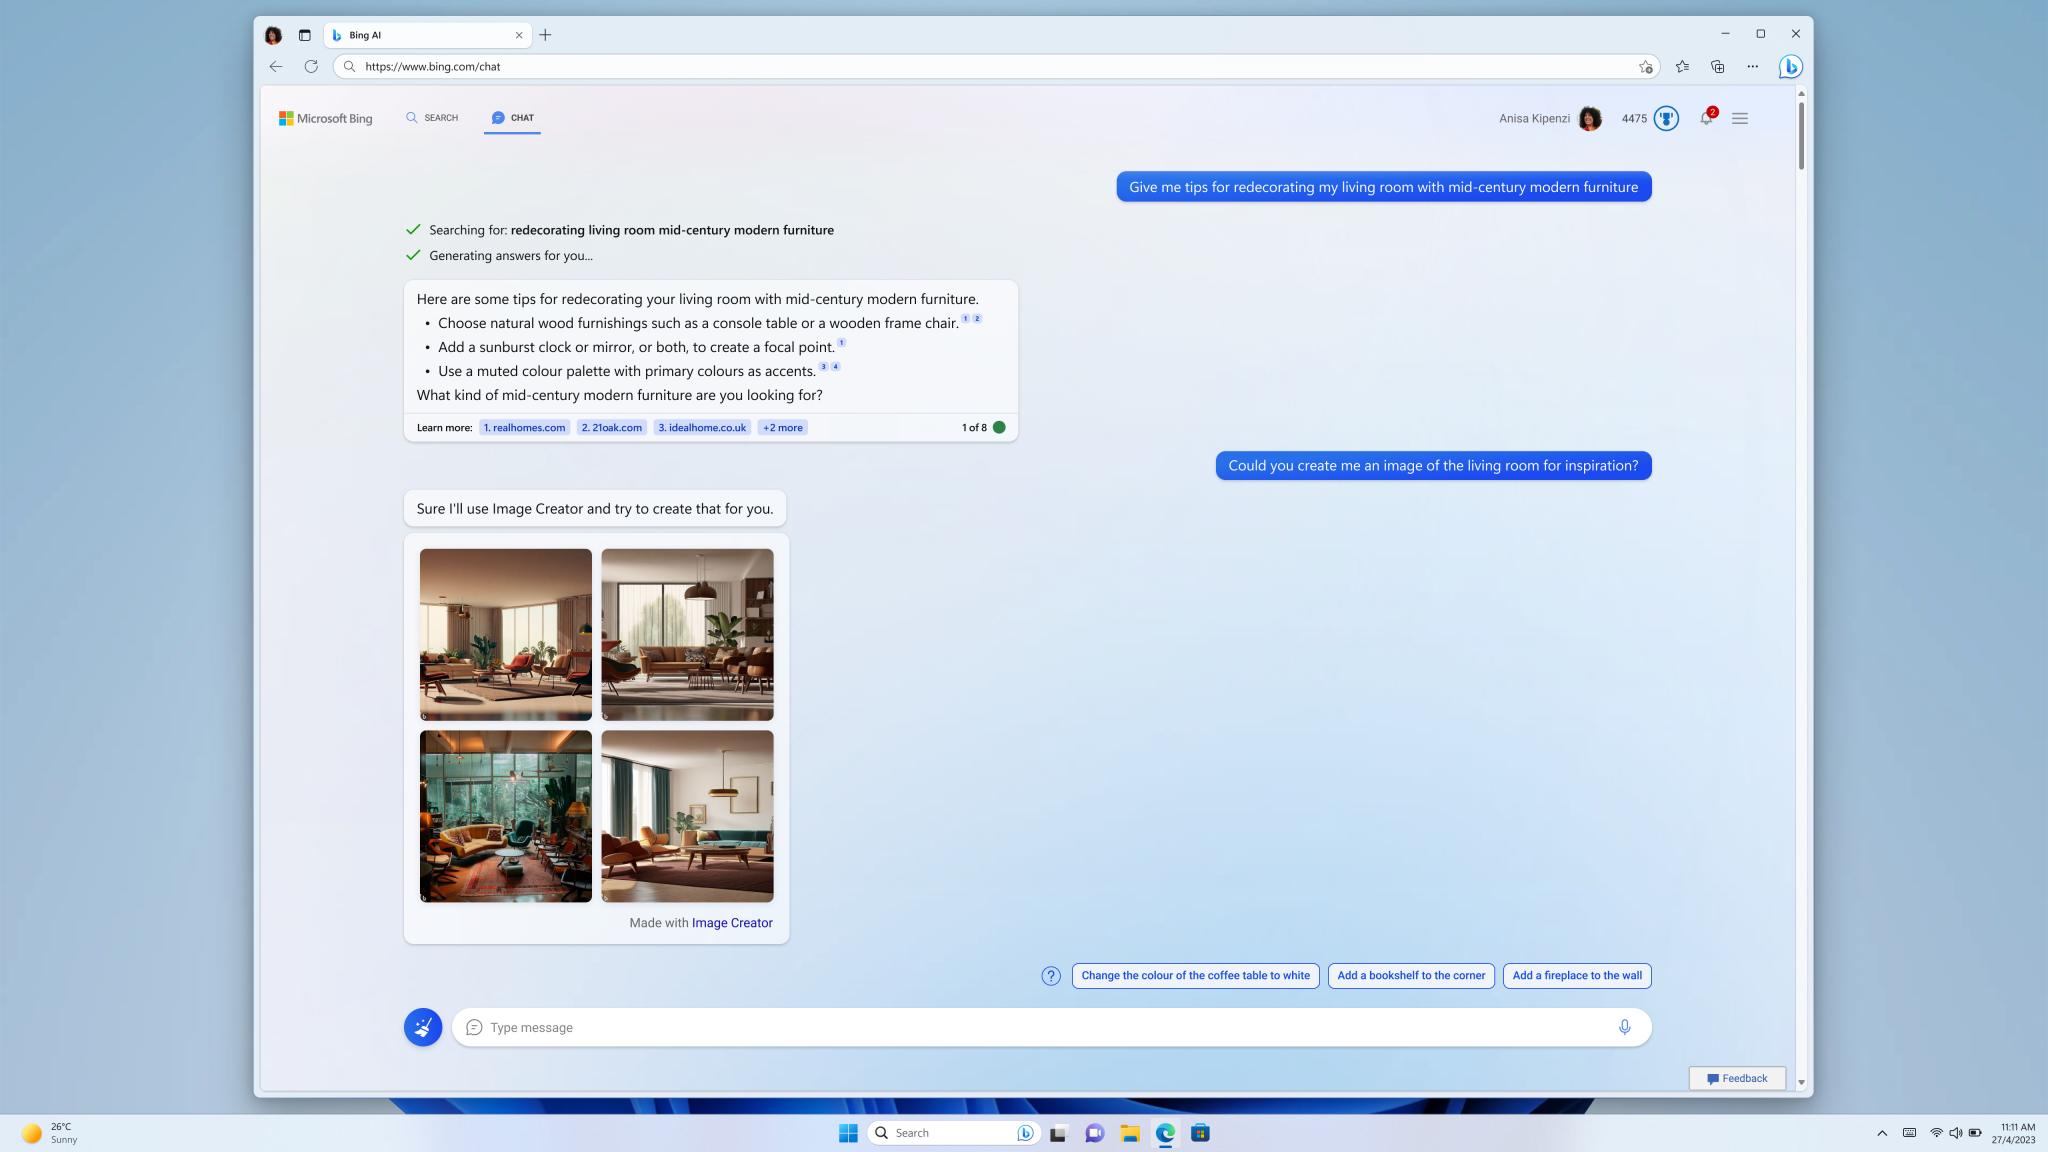 Experiencia de chat con Bing Image Creator